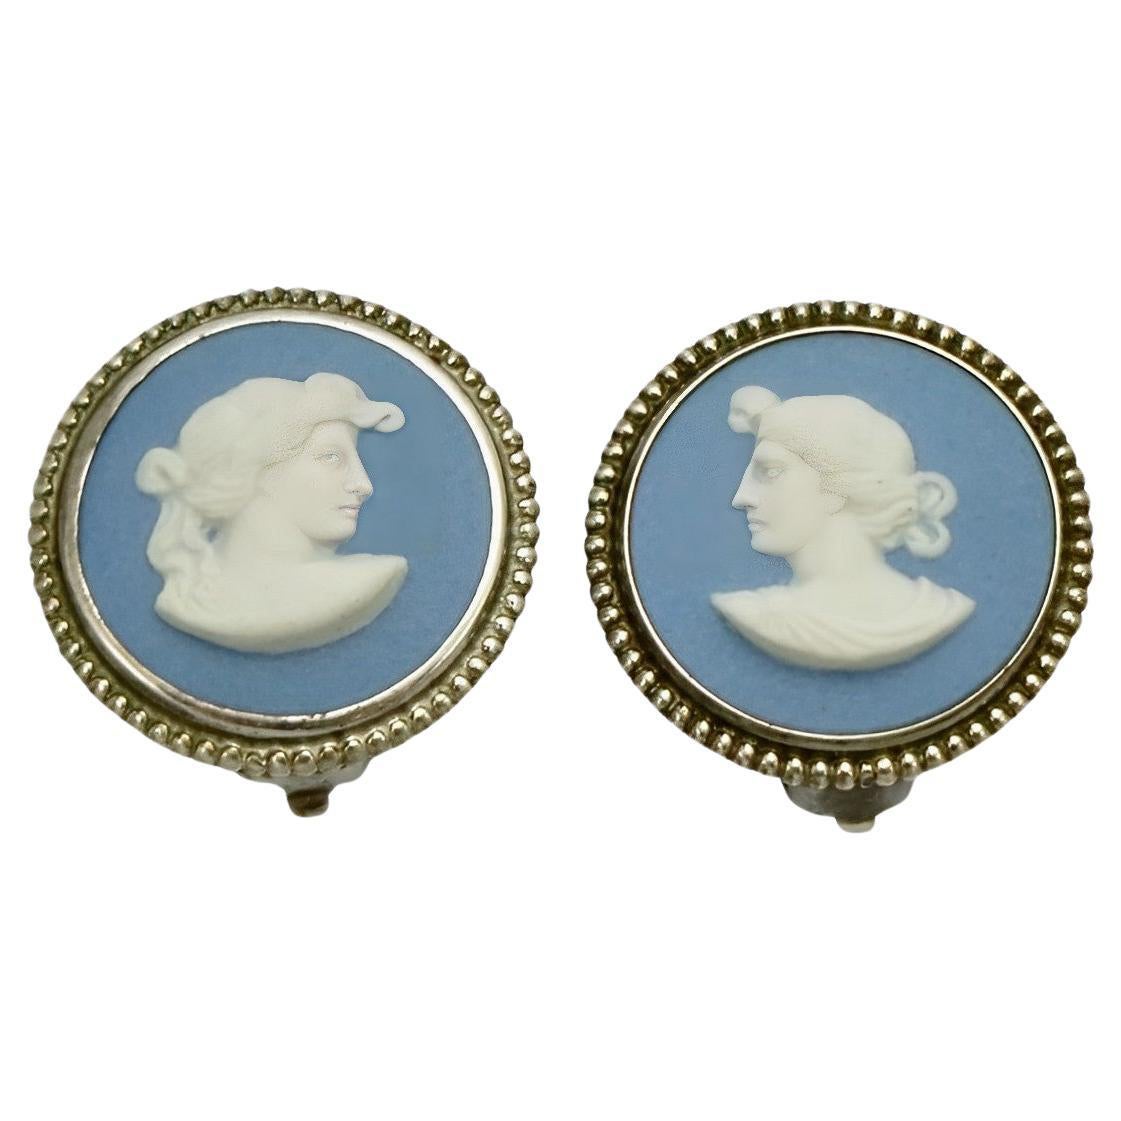 Josiah Wedgwood Sterling Silver and Blue Jasperware Earrings dated 1969